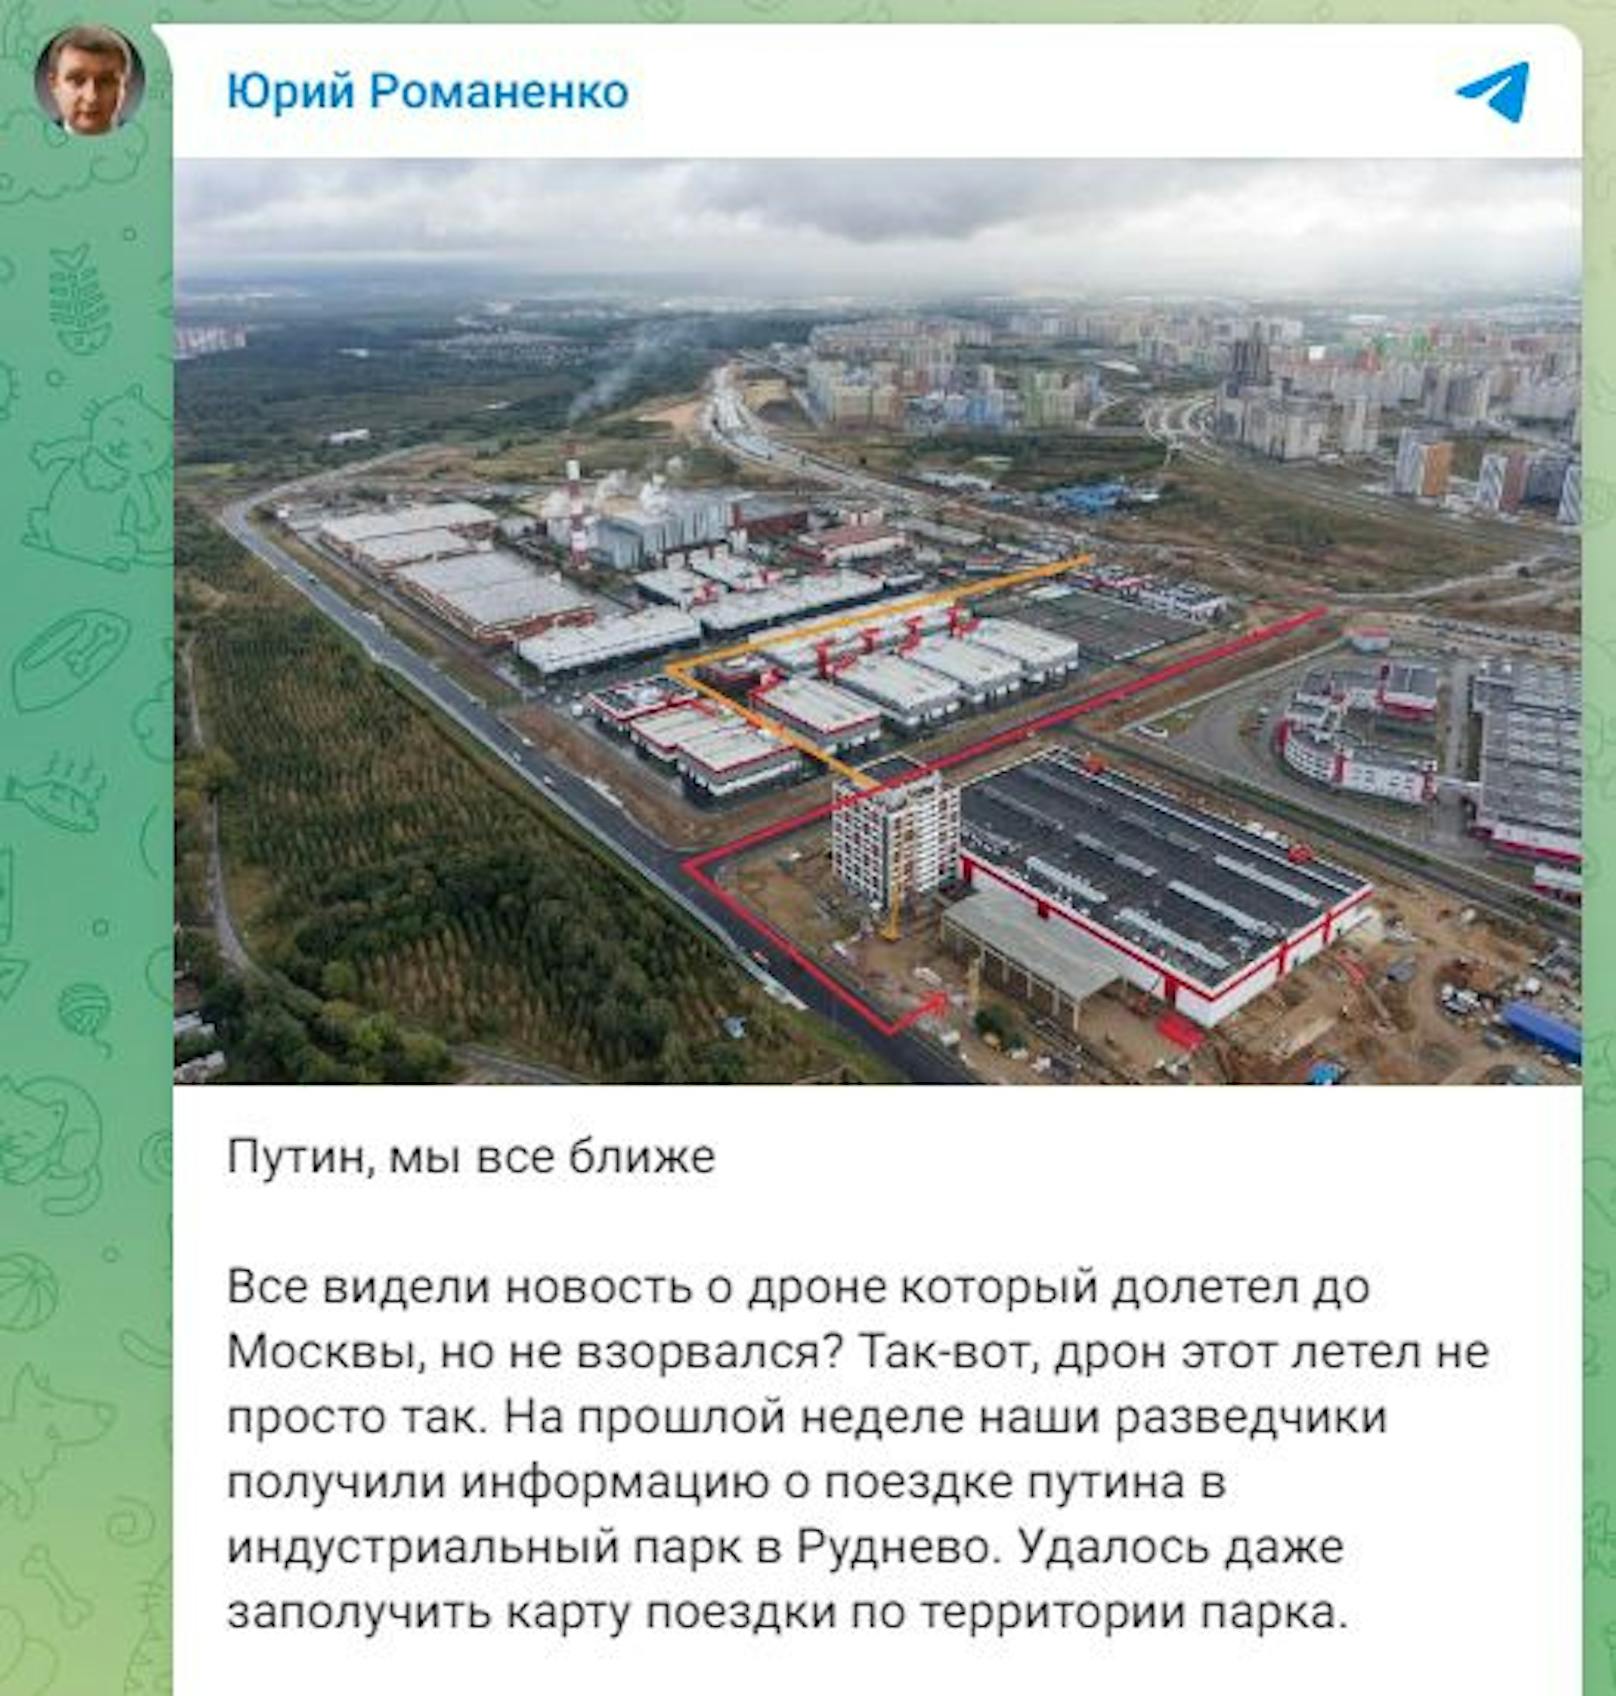 Jurij Romanenkos Telegram-Beitrag in dem behauptet wird, die "Kamikaze-Drohne" habe Wladimir Putin als Ziel gehabt.